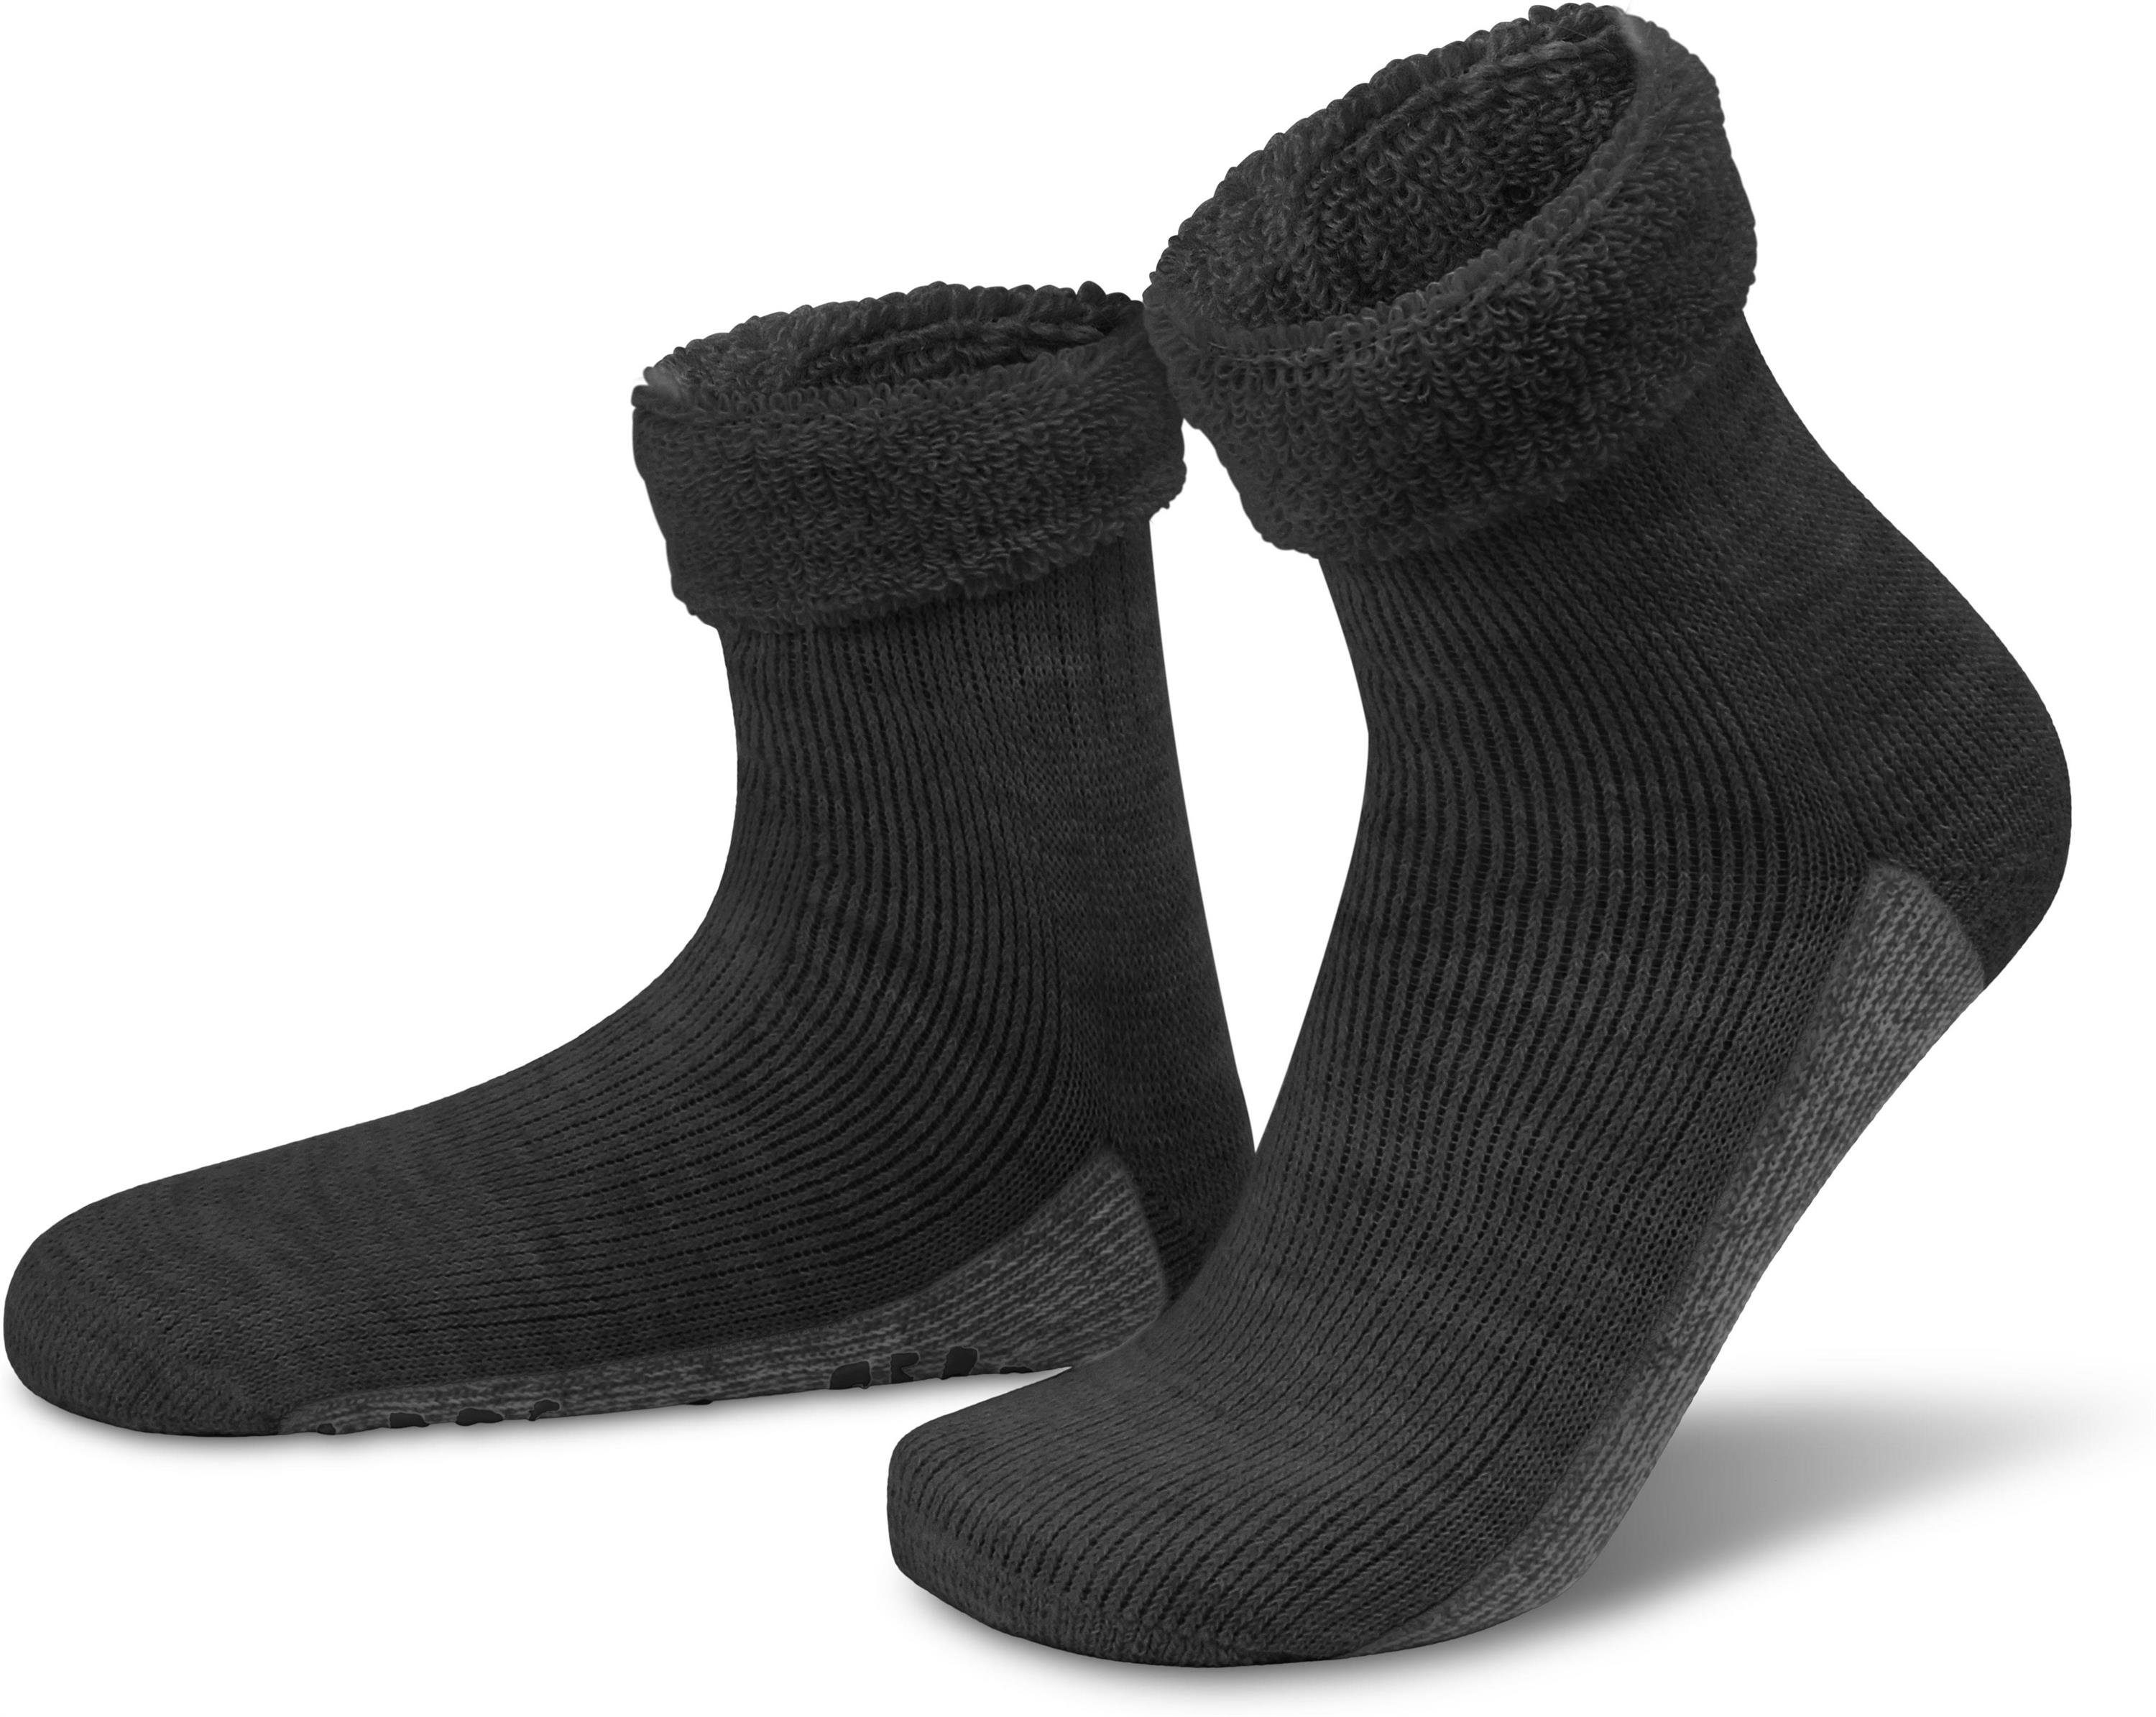 Wäsche/Bademode Socken normani ABS-Socken Alpaka-Wollsocken mit ABS-Druck (1 Paar) hochwertige Alpaka-Wolle